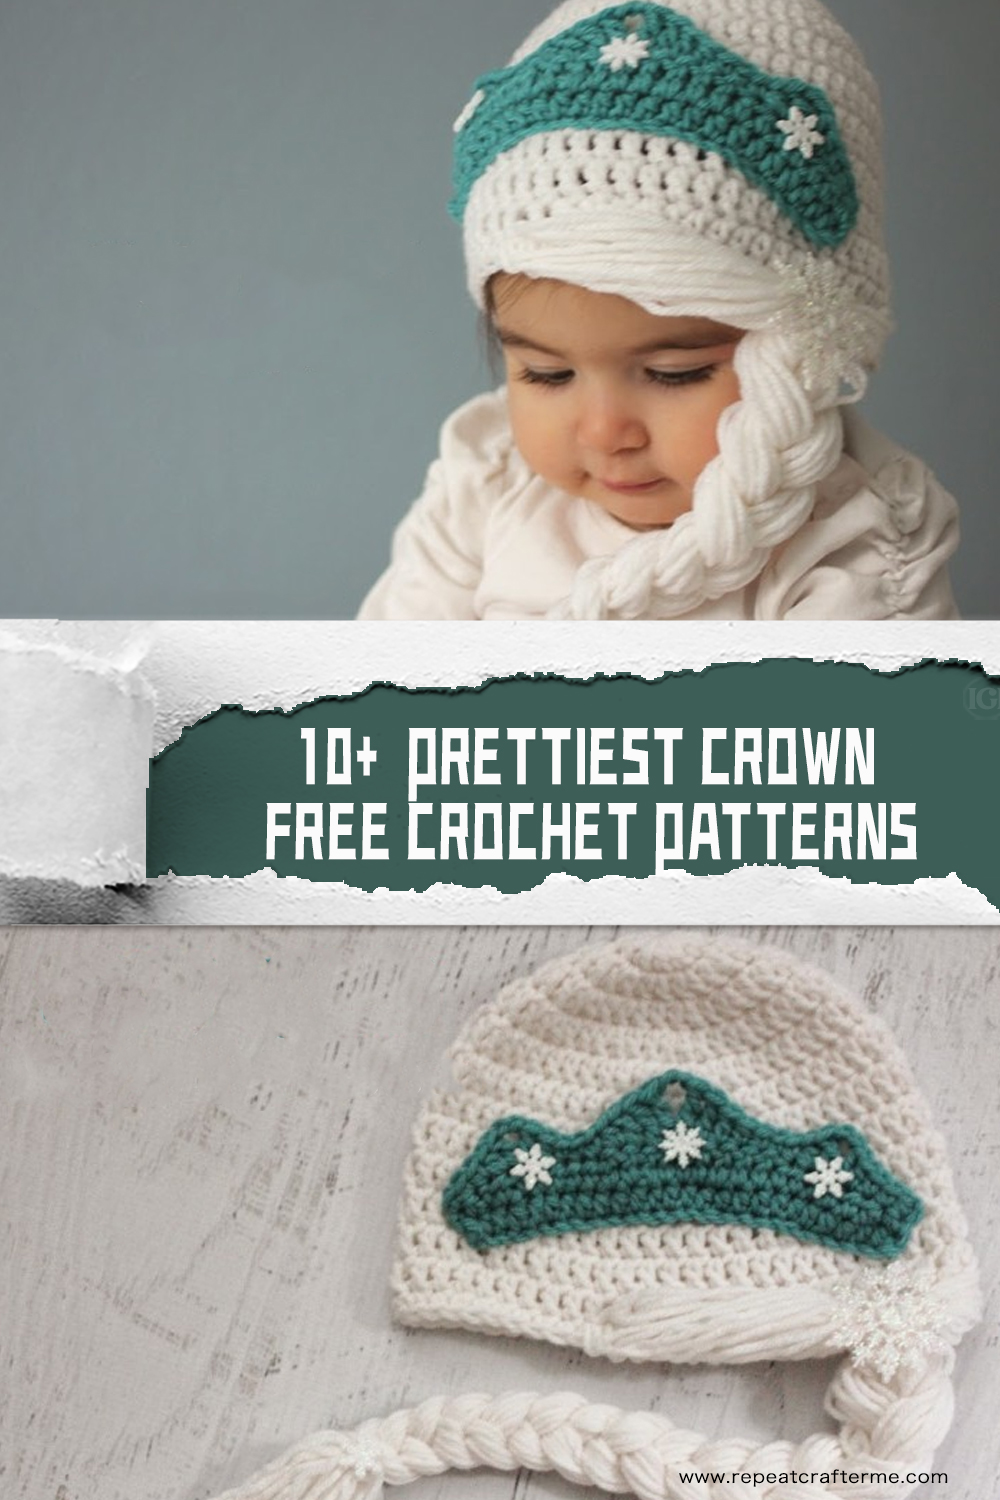 10+ Prettiest Crown FREE Crochet Patterns